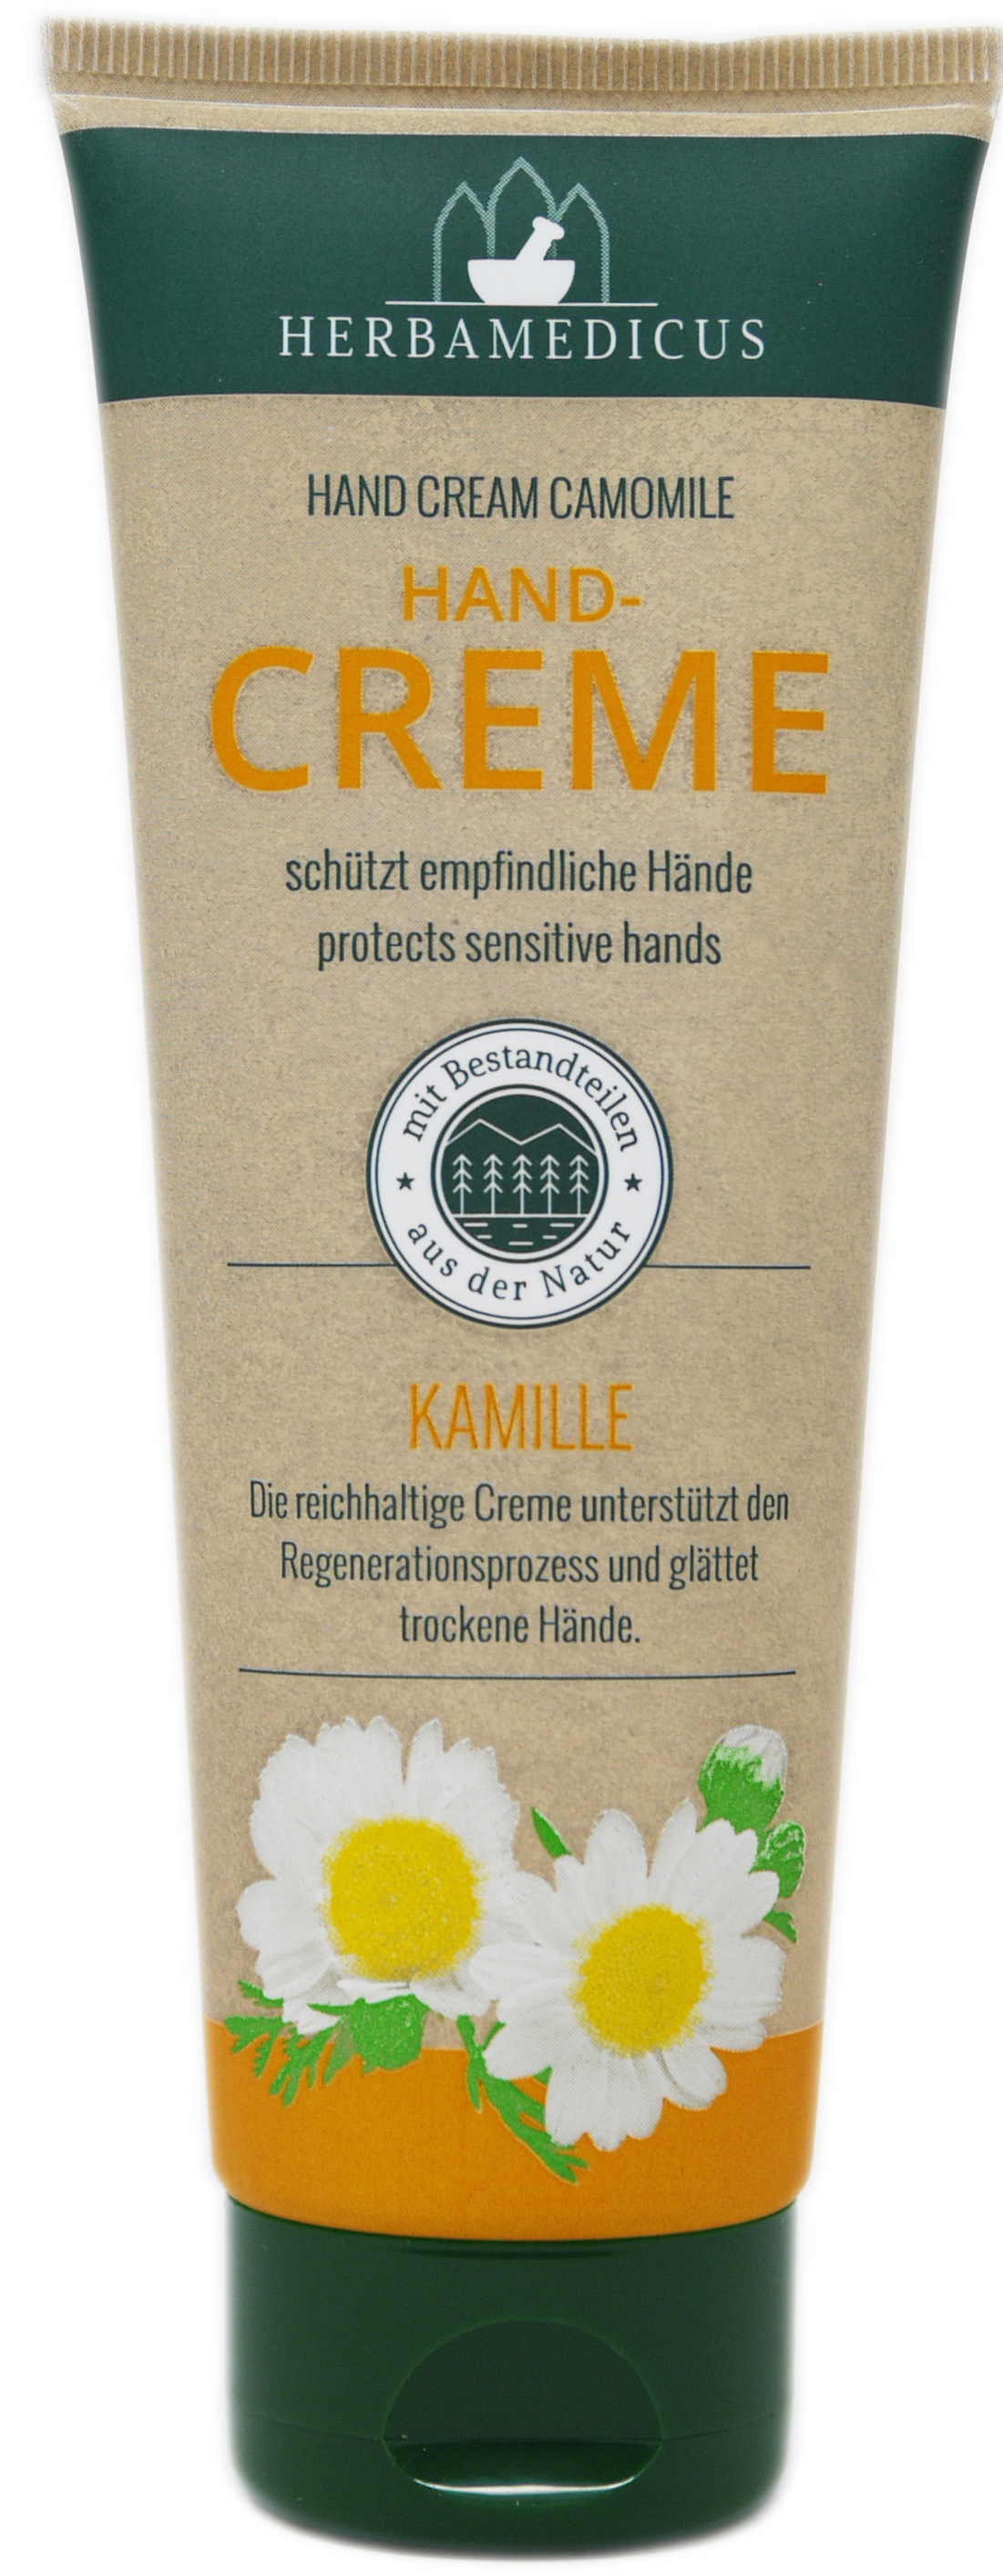 01845 - hand cream camomile 125 ml